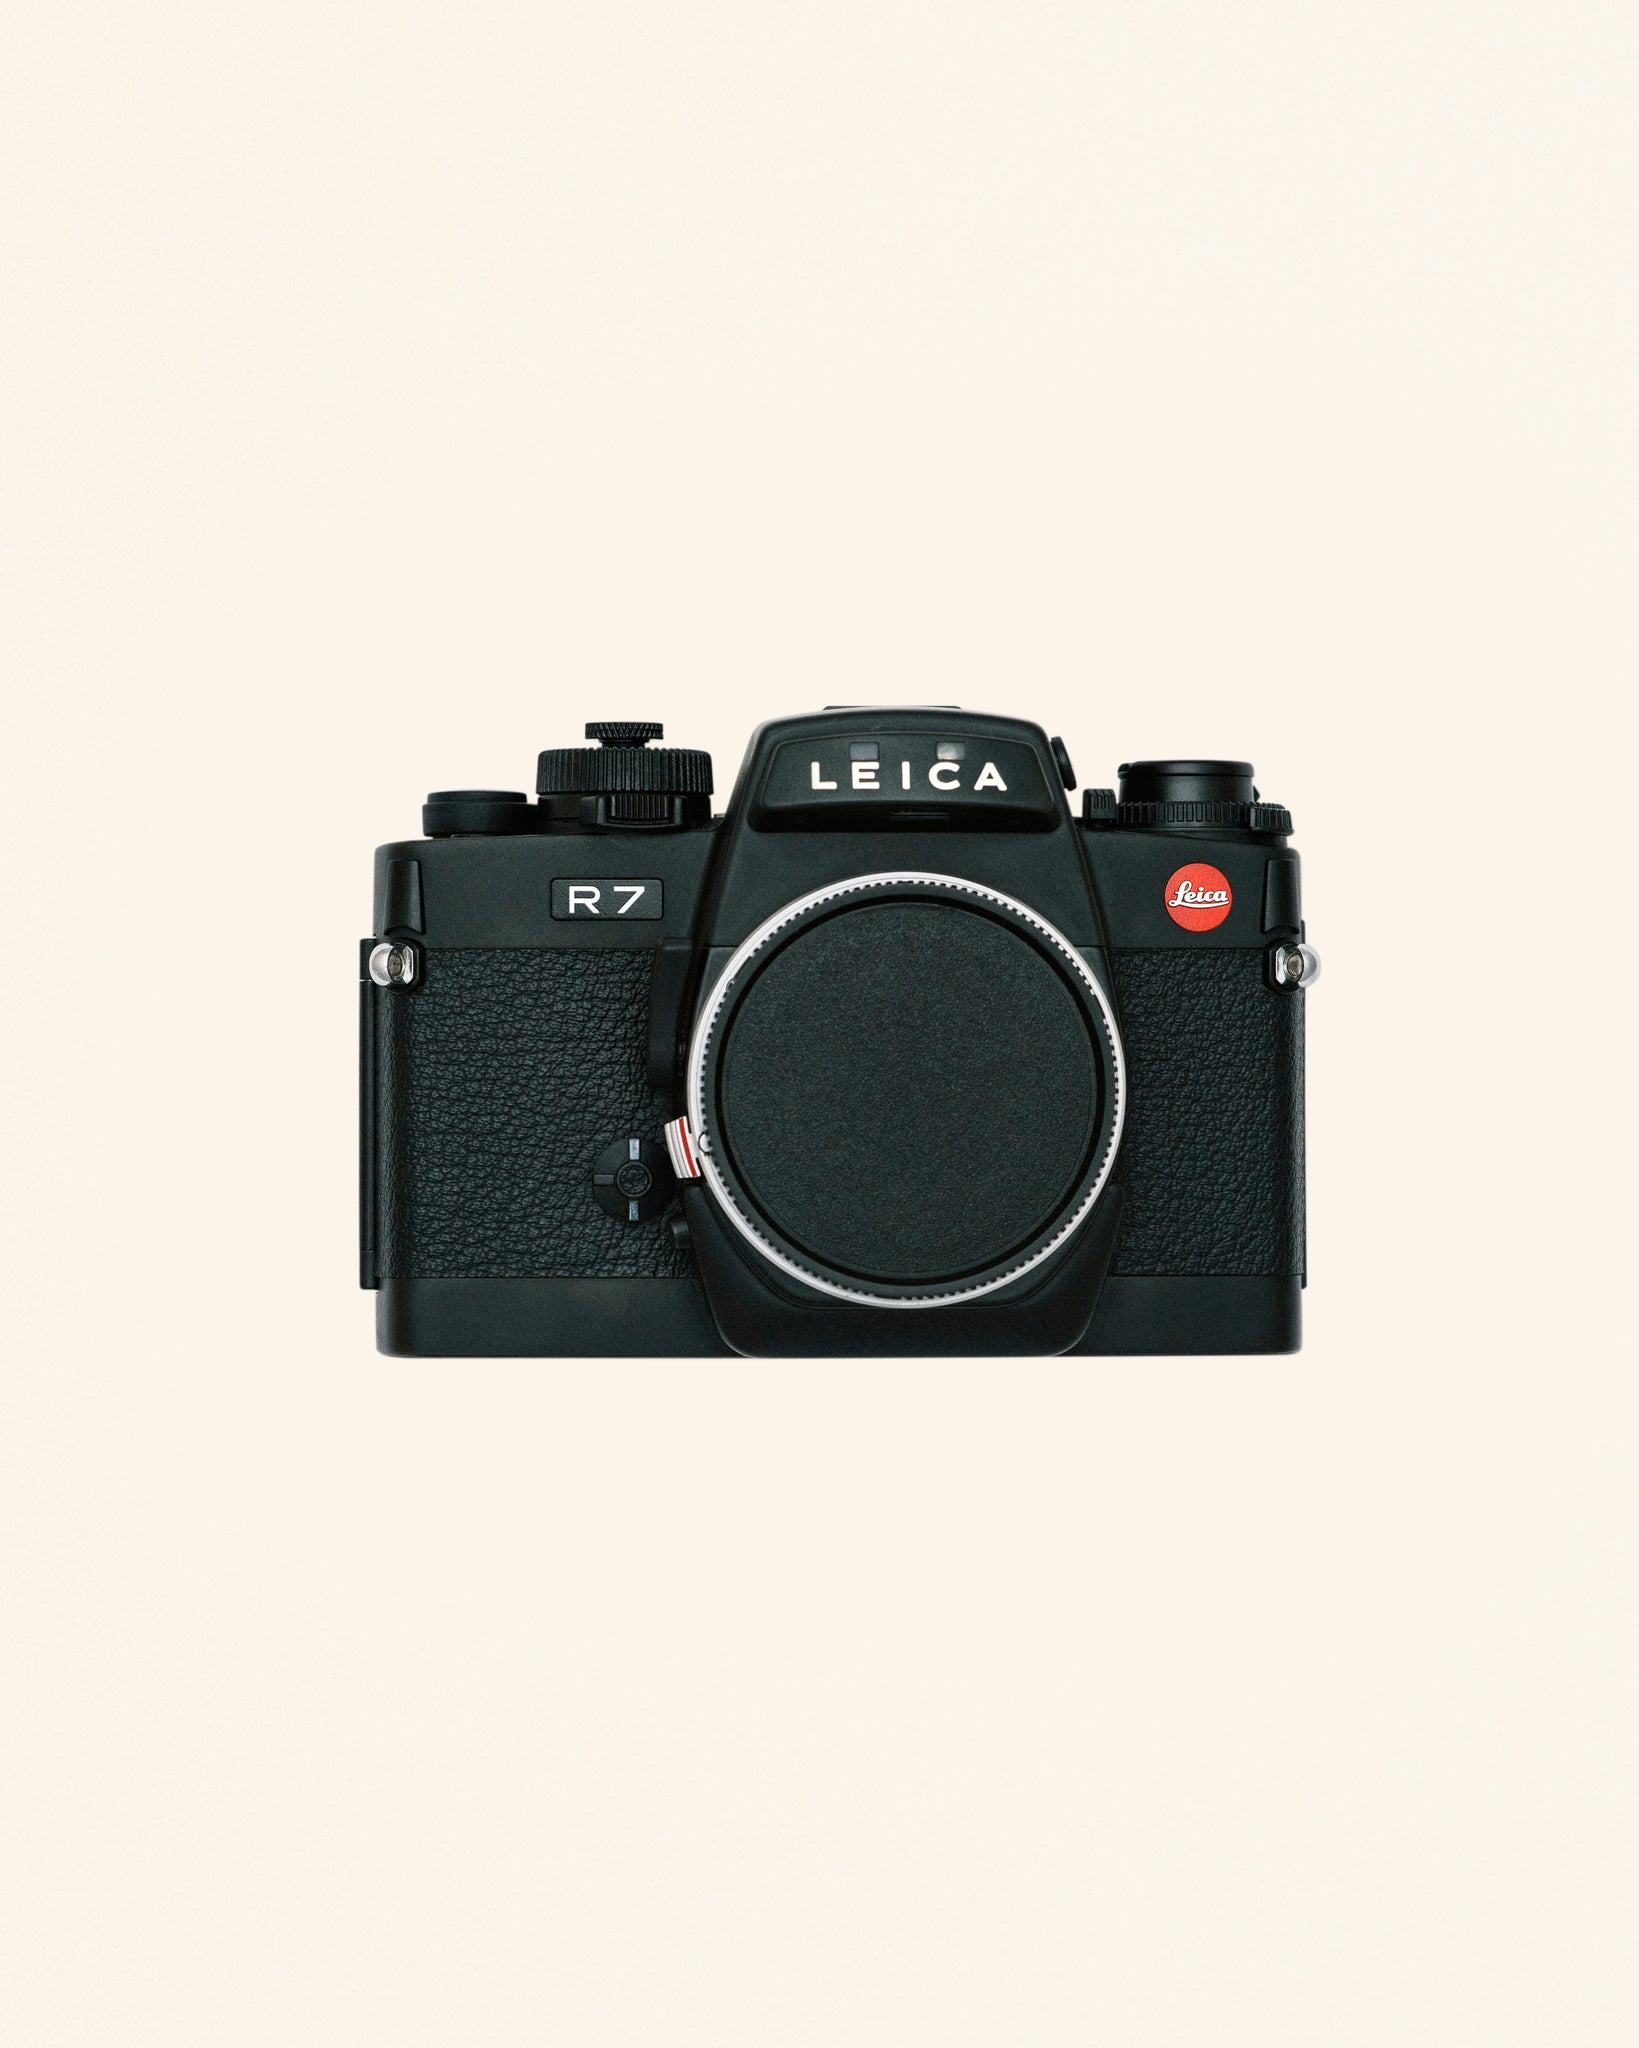 Leica R7 35mm